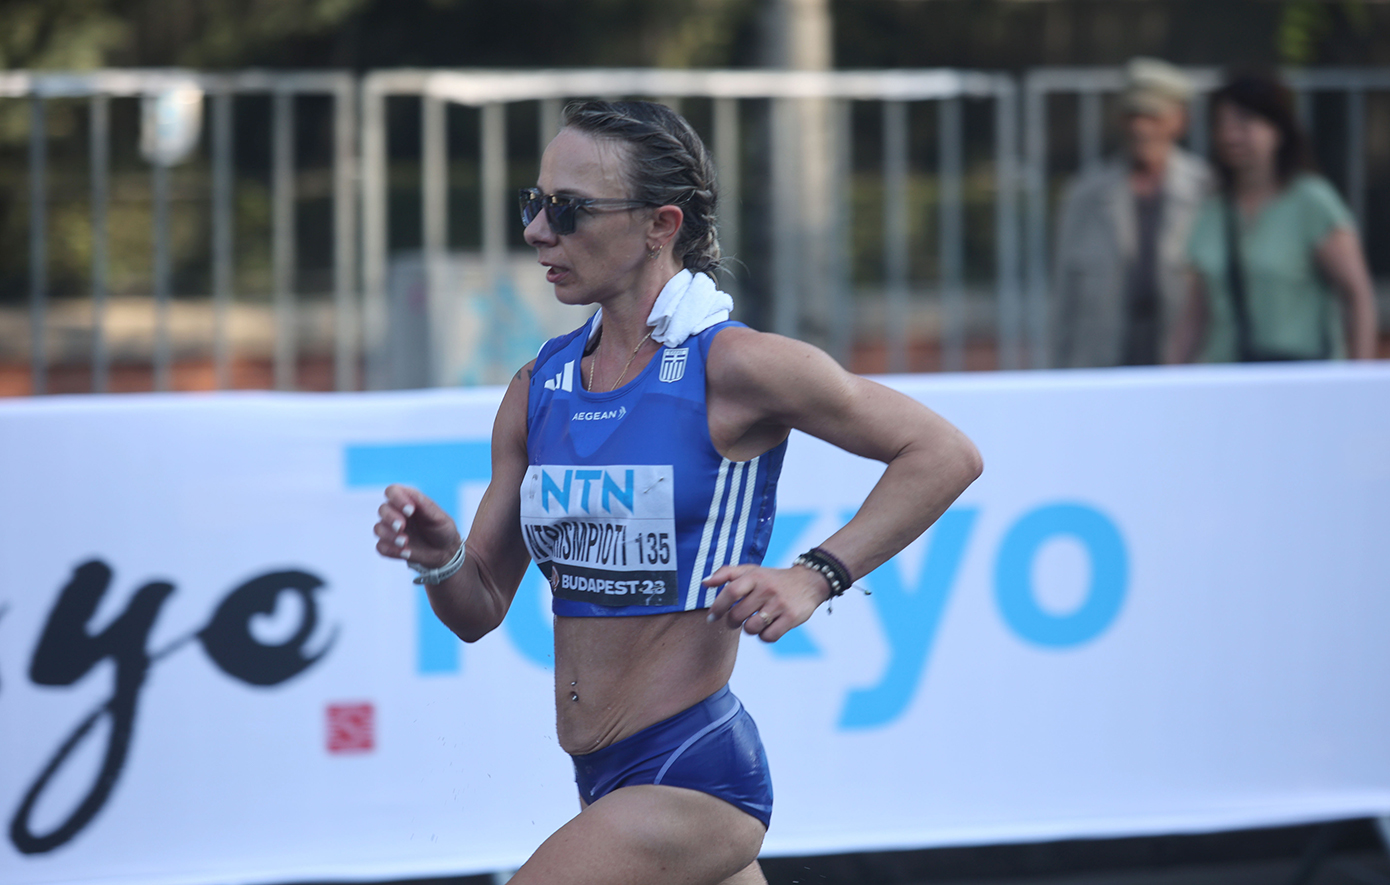 Ευρωπαϊκό Πρωτάθλημα Στίβου: Στη 16η θέση τερμάτισε η Ντρισμπιώτη στα 20 χλμ βάδην γυναικών